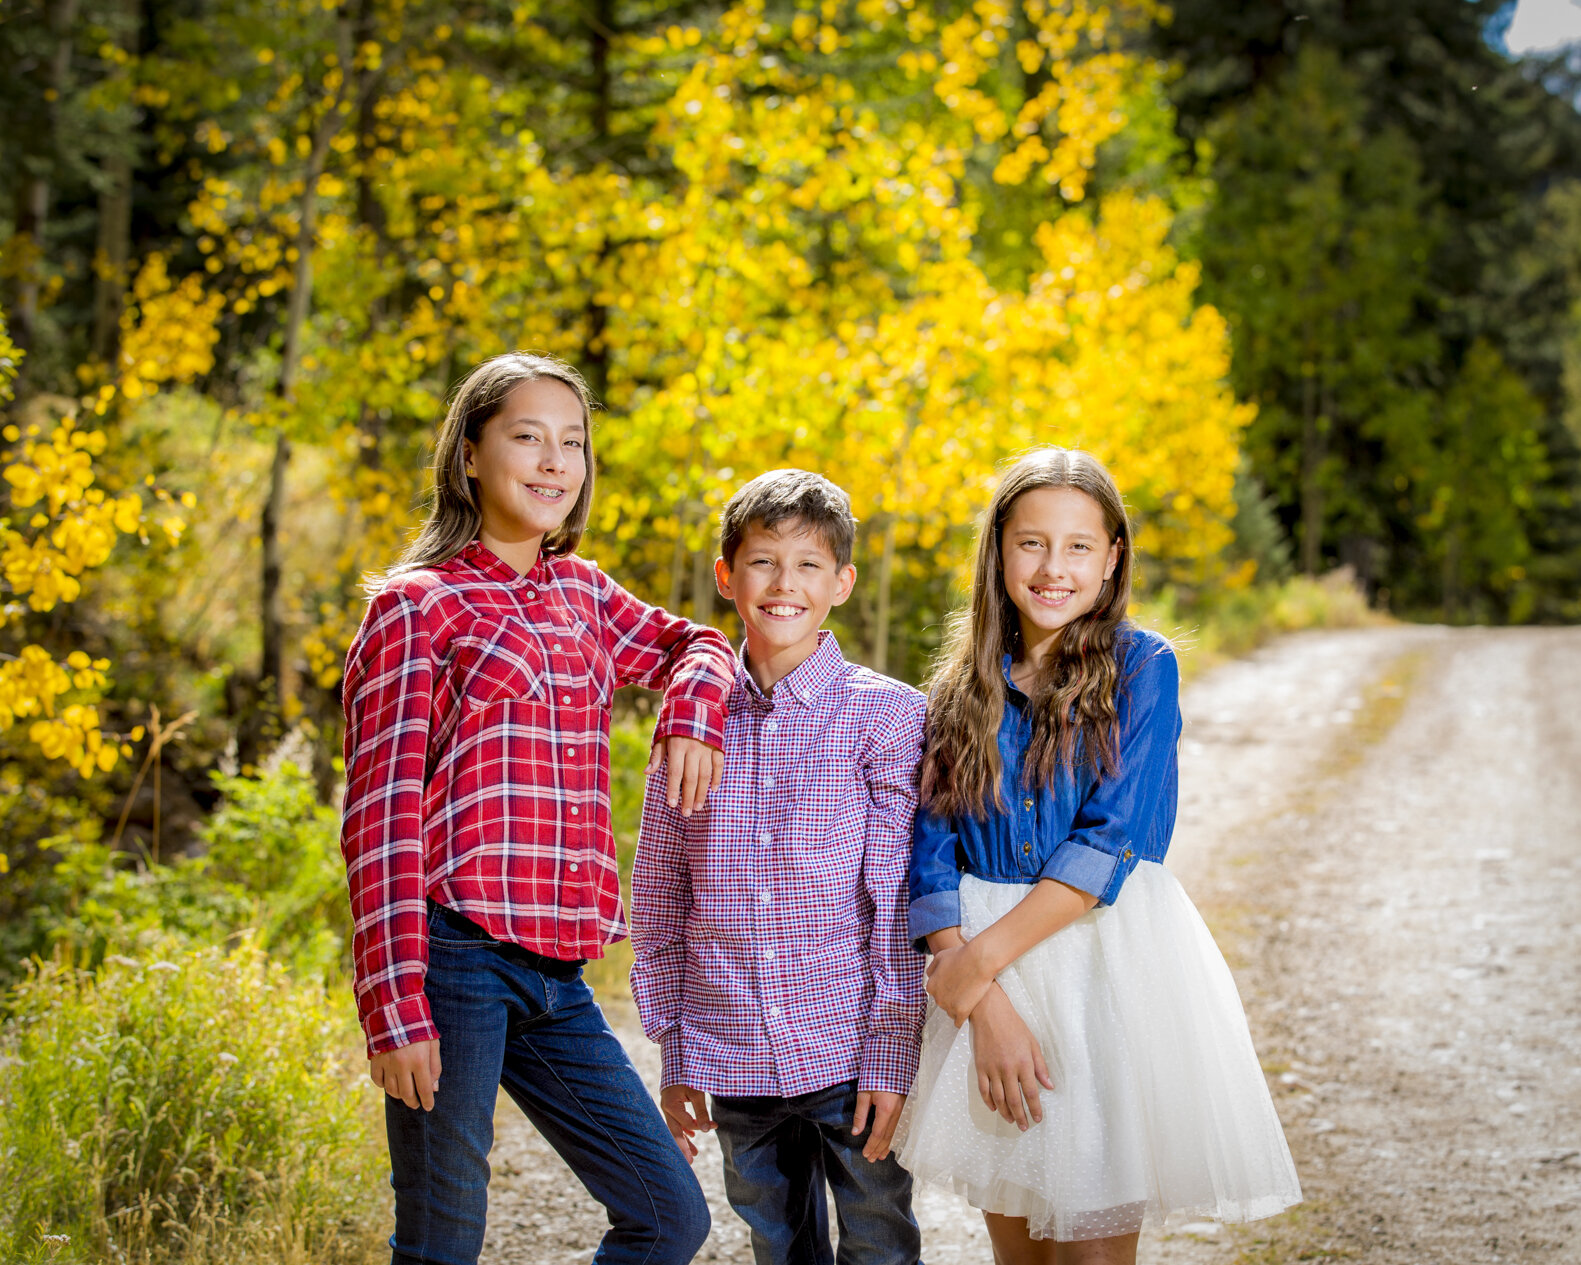 Colorado-Family-Portrait-Photography-Crested-Butte-Portrait-Photographer-2-2.jpg